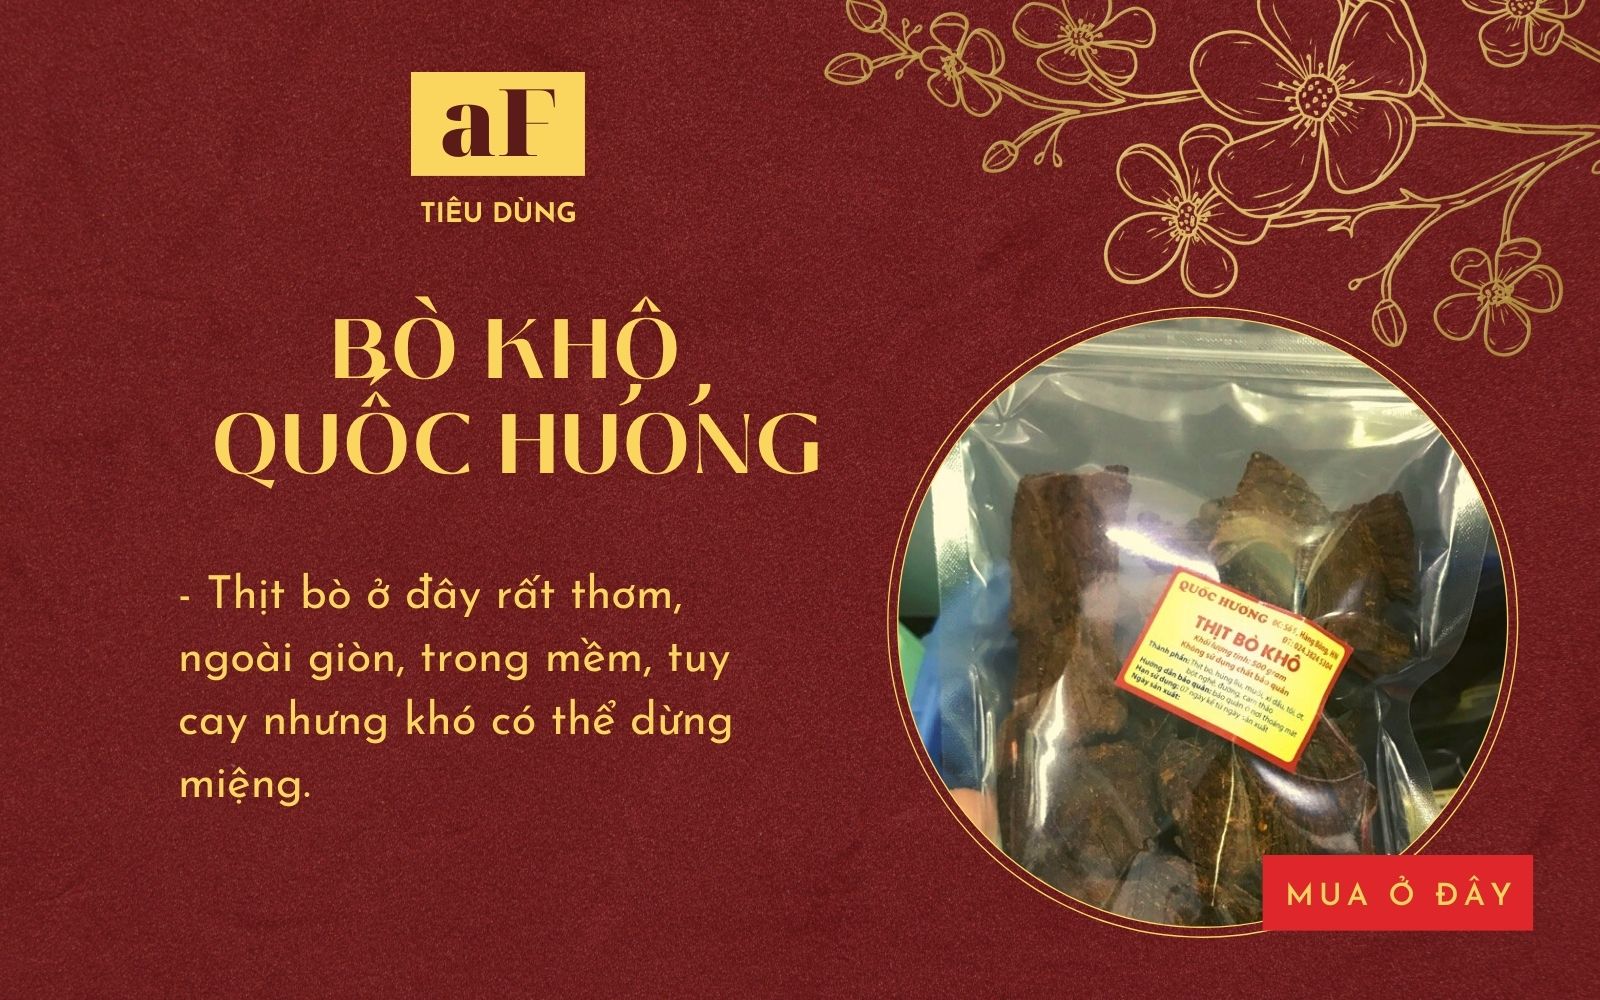 7 địa chỉ mua thịt bò khô ngon tại Hà Nội và Sài Gòn mua đãi khách Tết ai cũng tấm tắc khen - Ảnh 1.